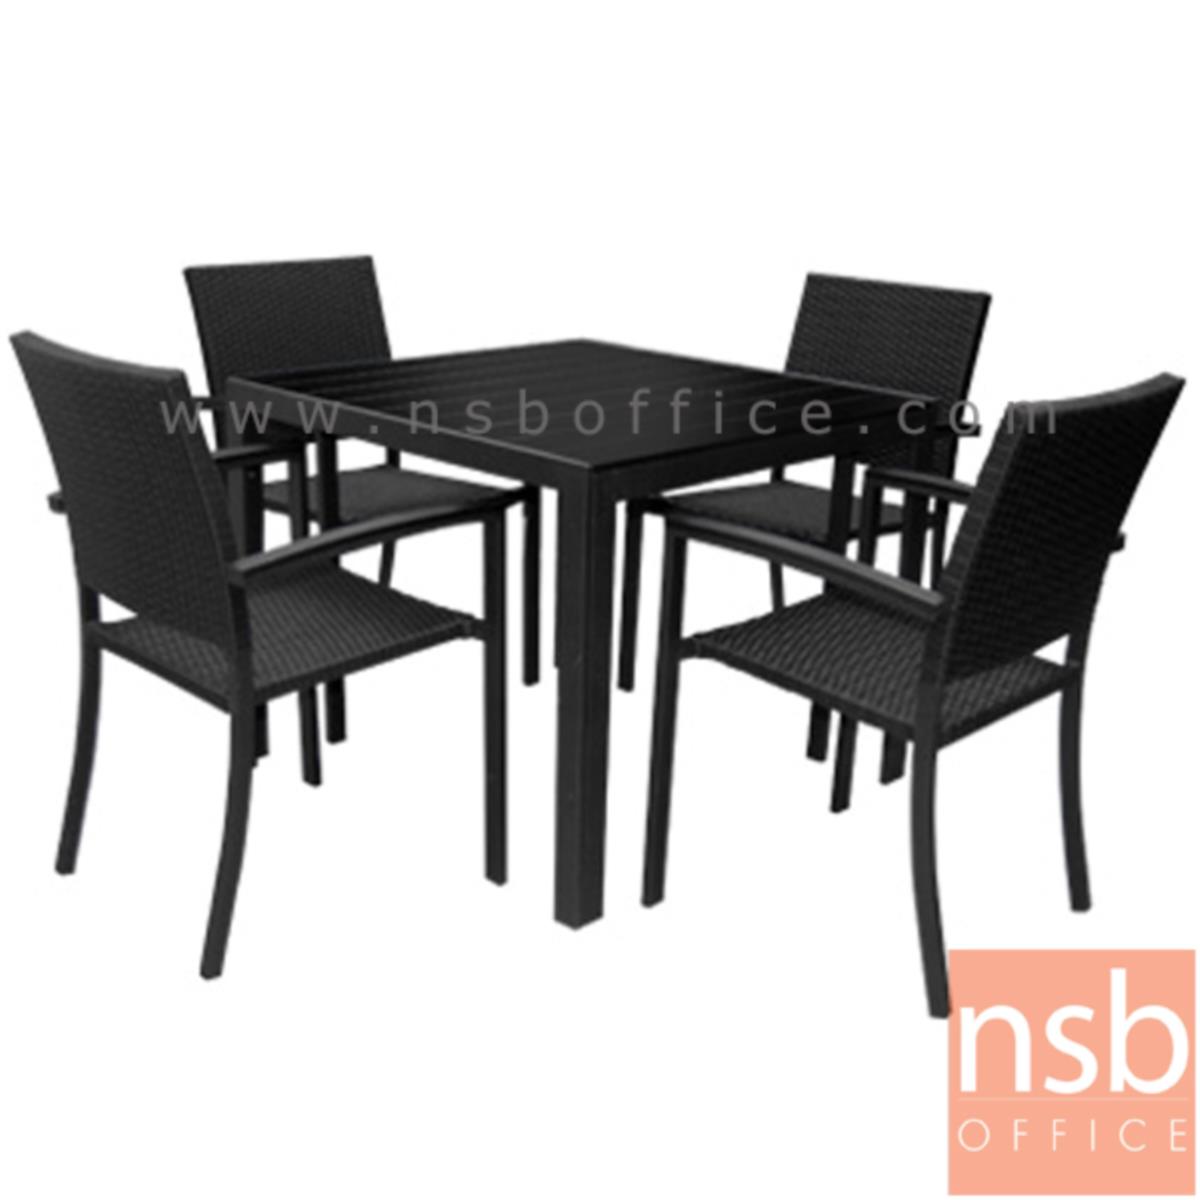 G11A168:ชุดโต๊ะและเก้าอี้ 4 ที่นั่งสนาม รุ่น RANO-90CM ผลิตสีดำ   